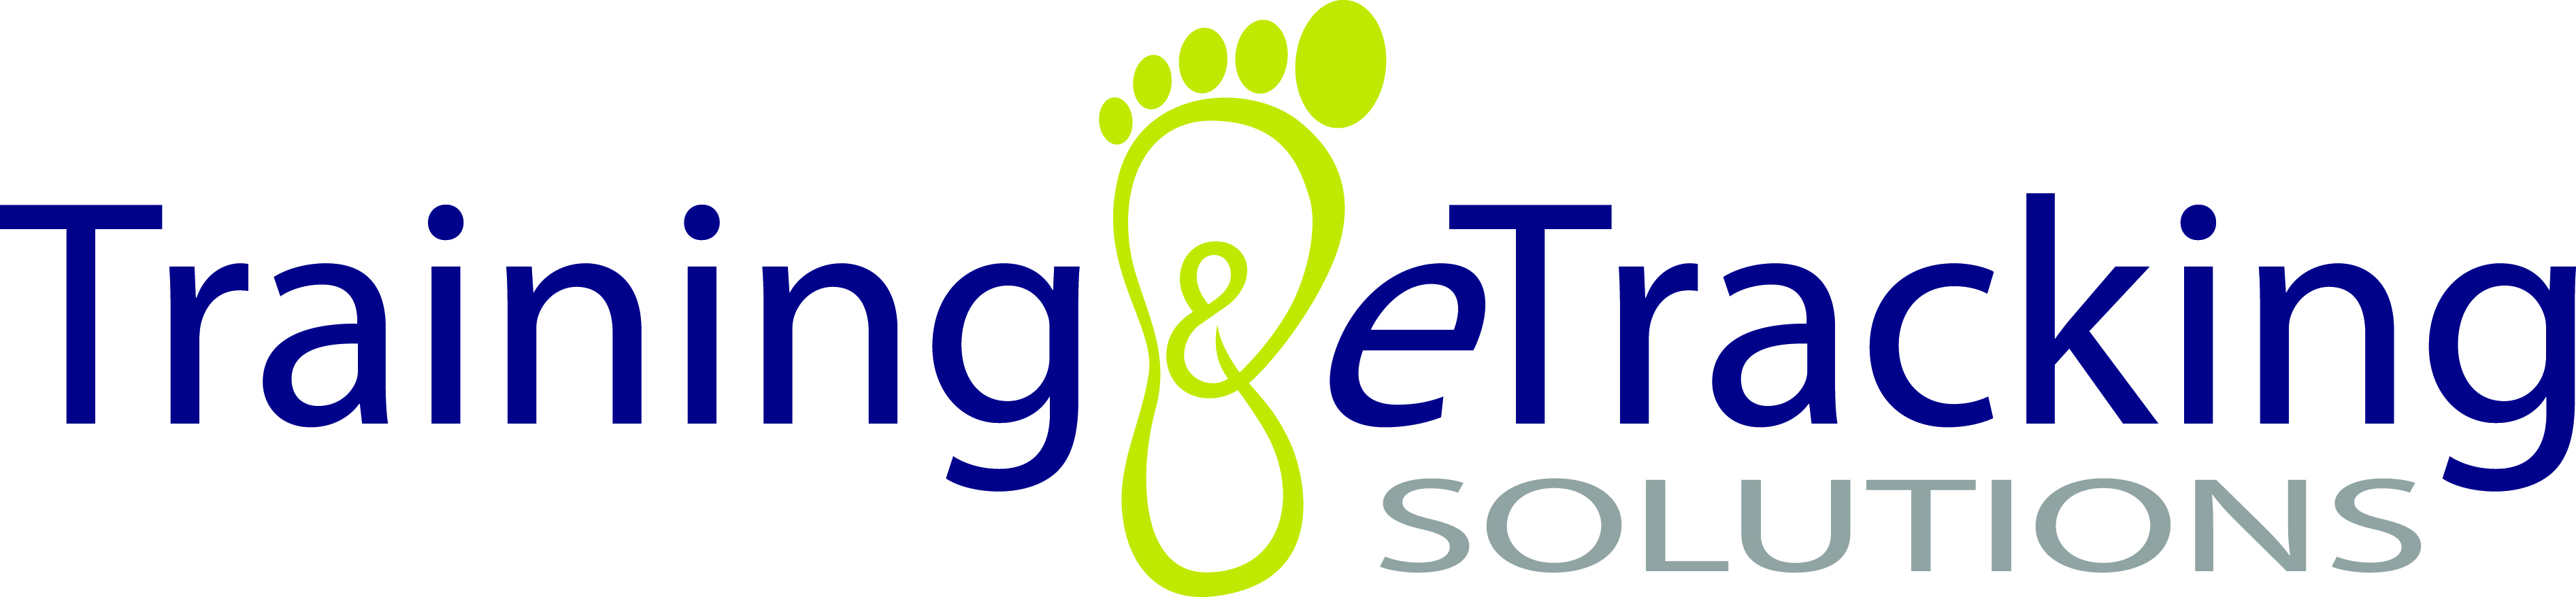 TeTS logo.jpg